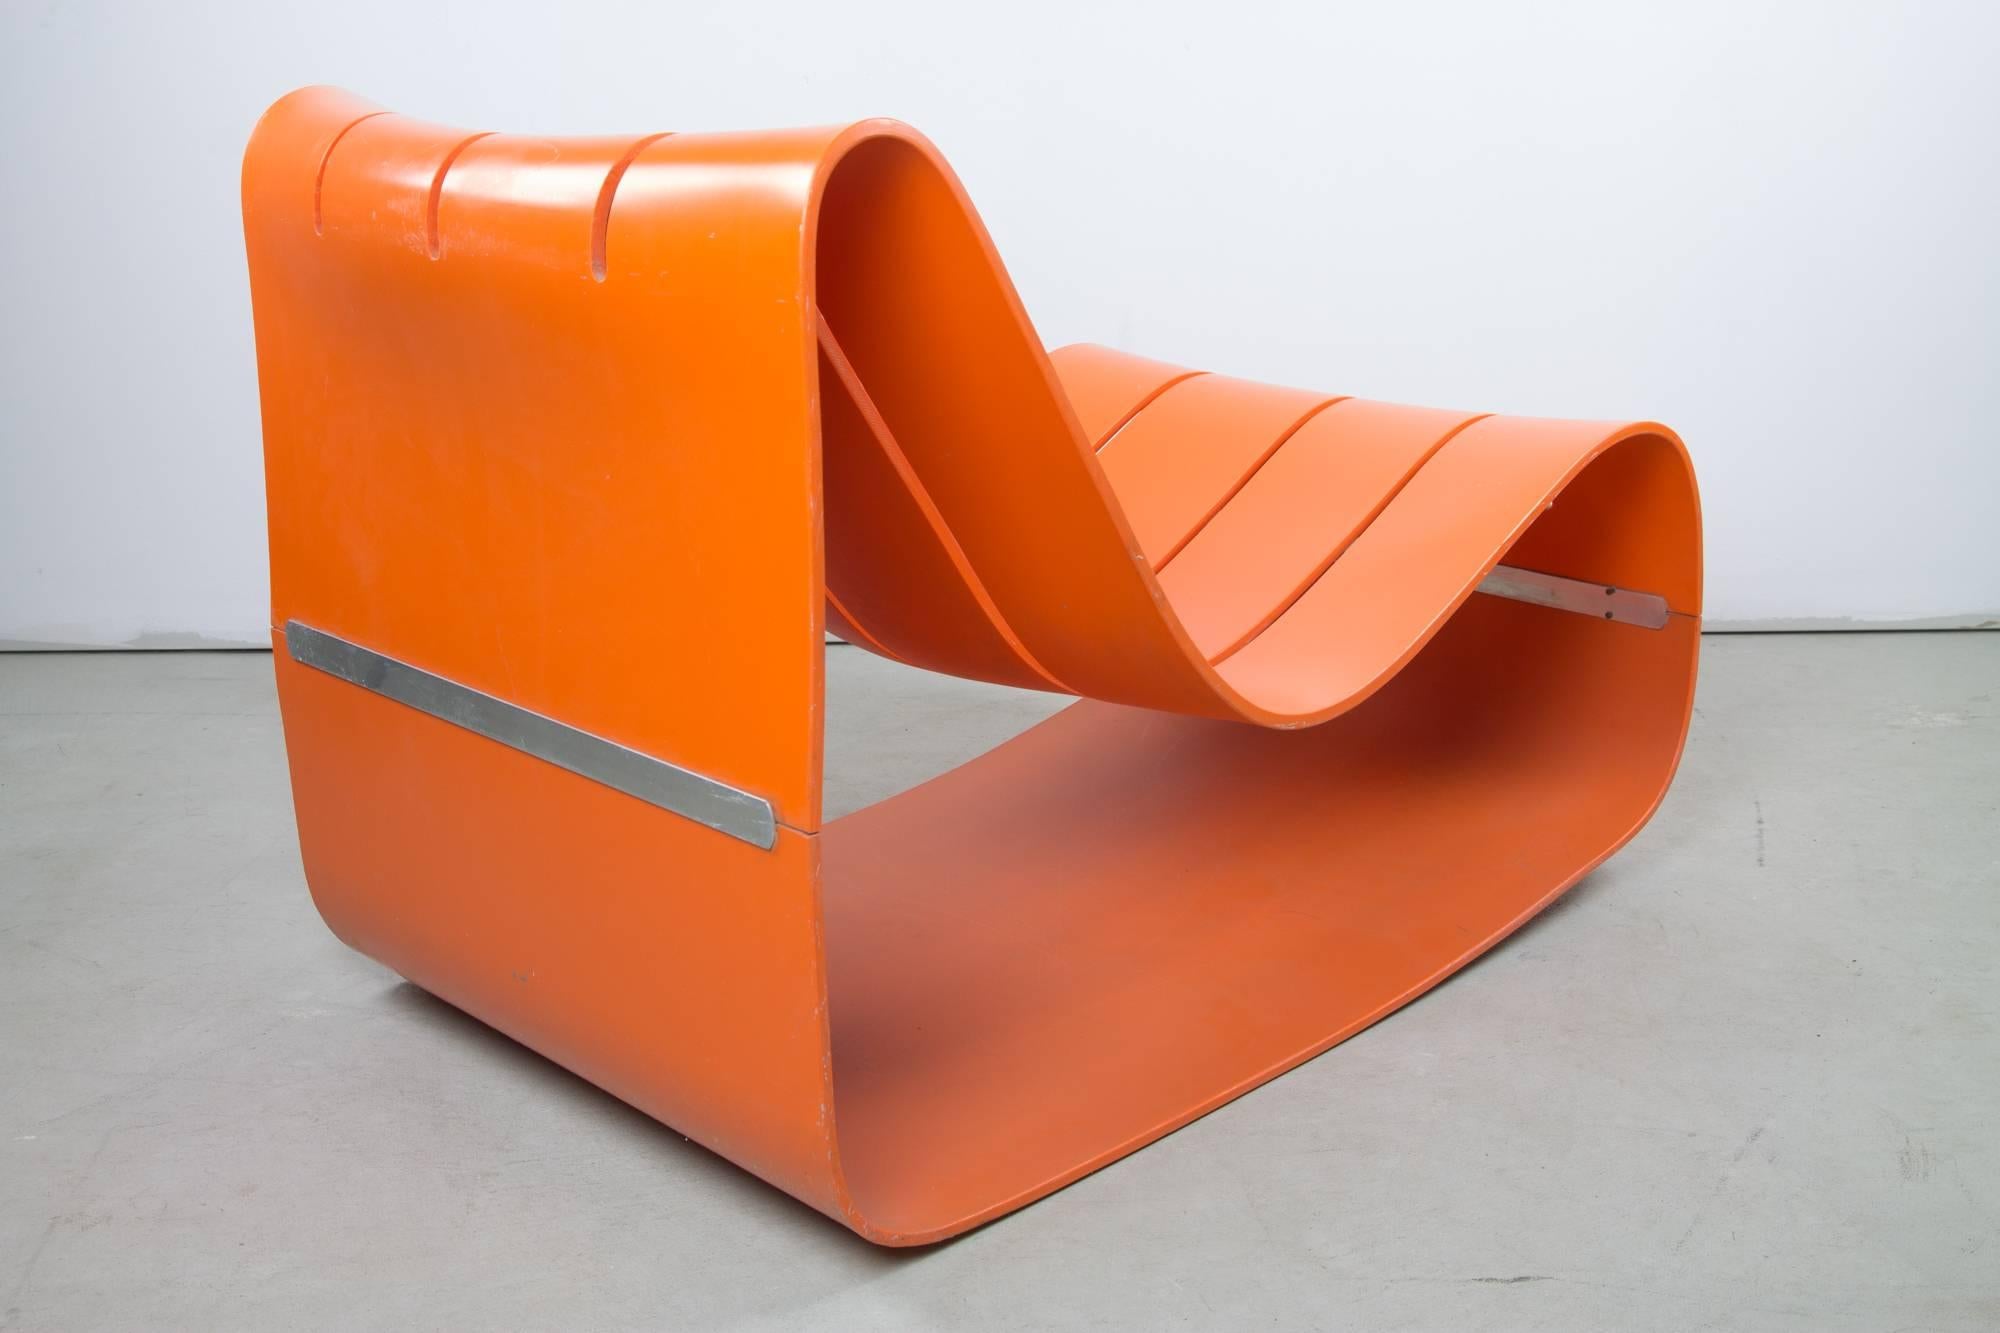 Cette chaise très rare de Motomi Kawakami pour Alberto Bazzani est formée de deux coques en plastique ABS orange, reliées sur toute leur largeur au bas de l'arrière et de l'avant par une double barre métallique vissée depuis l'intérieur de la coque.